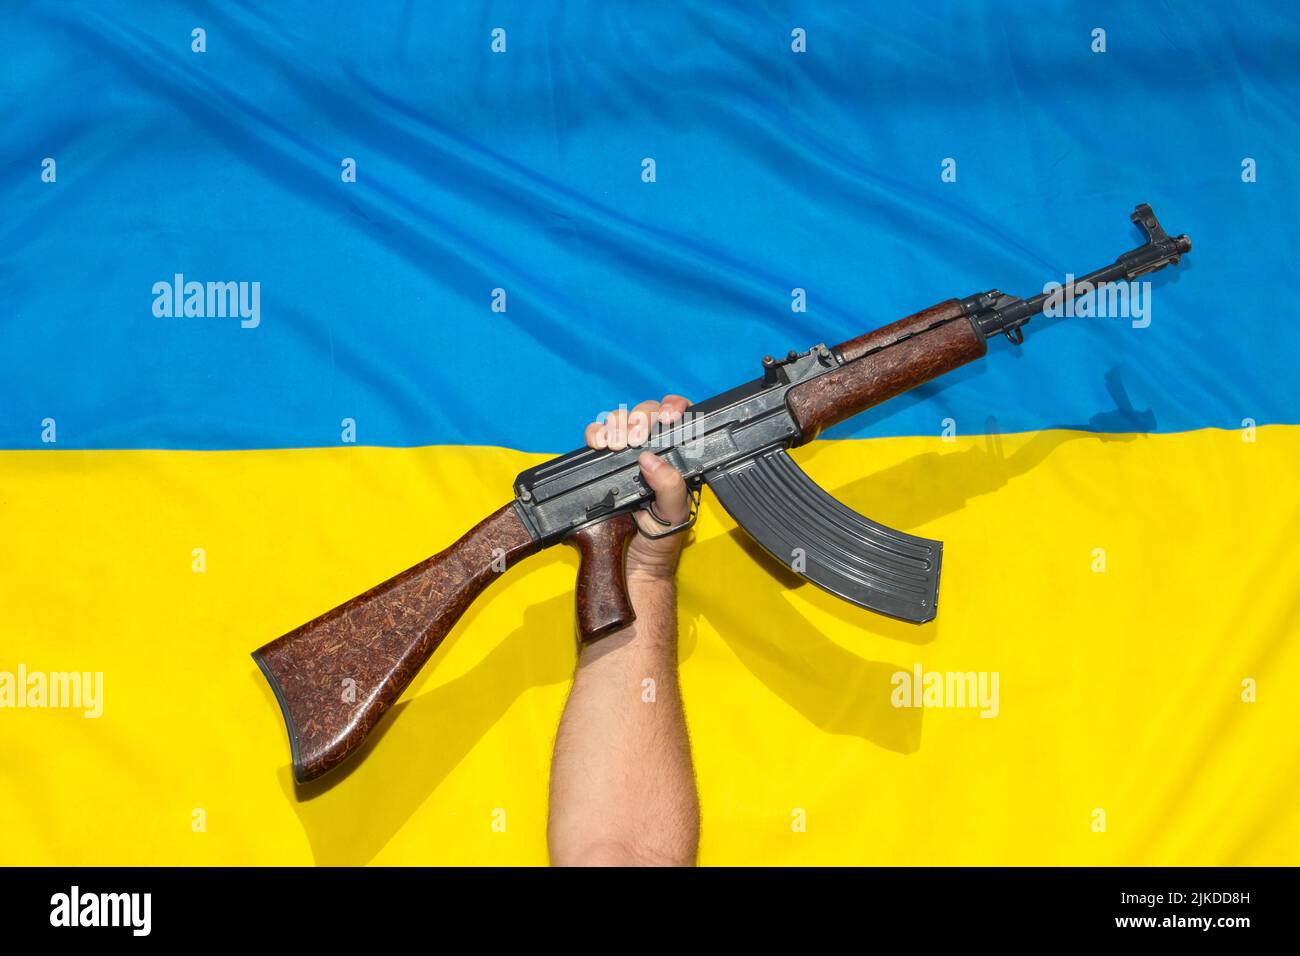 La pistola sollevata davanti alla bandiera Ucraina, simboleggia la resistenza contro l'aggressore Foto Stock